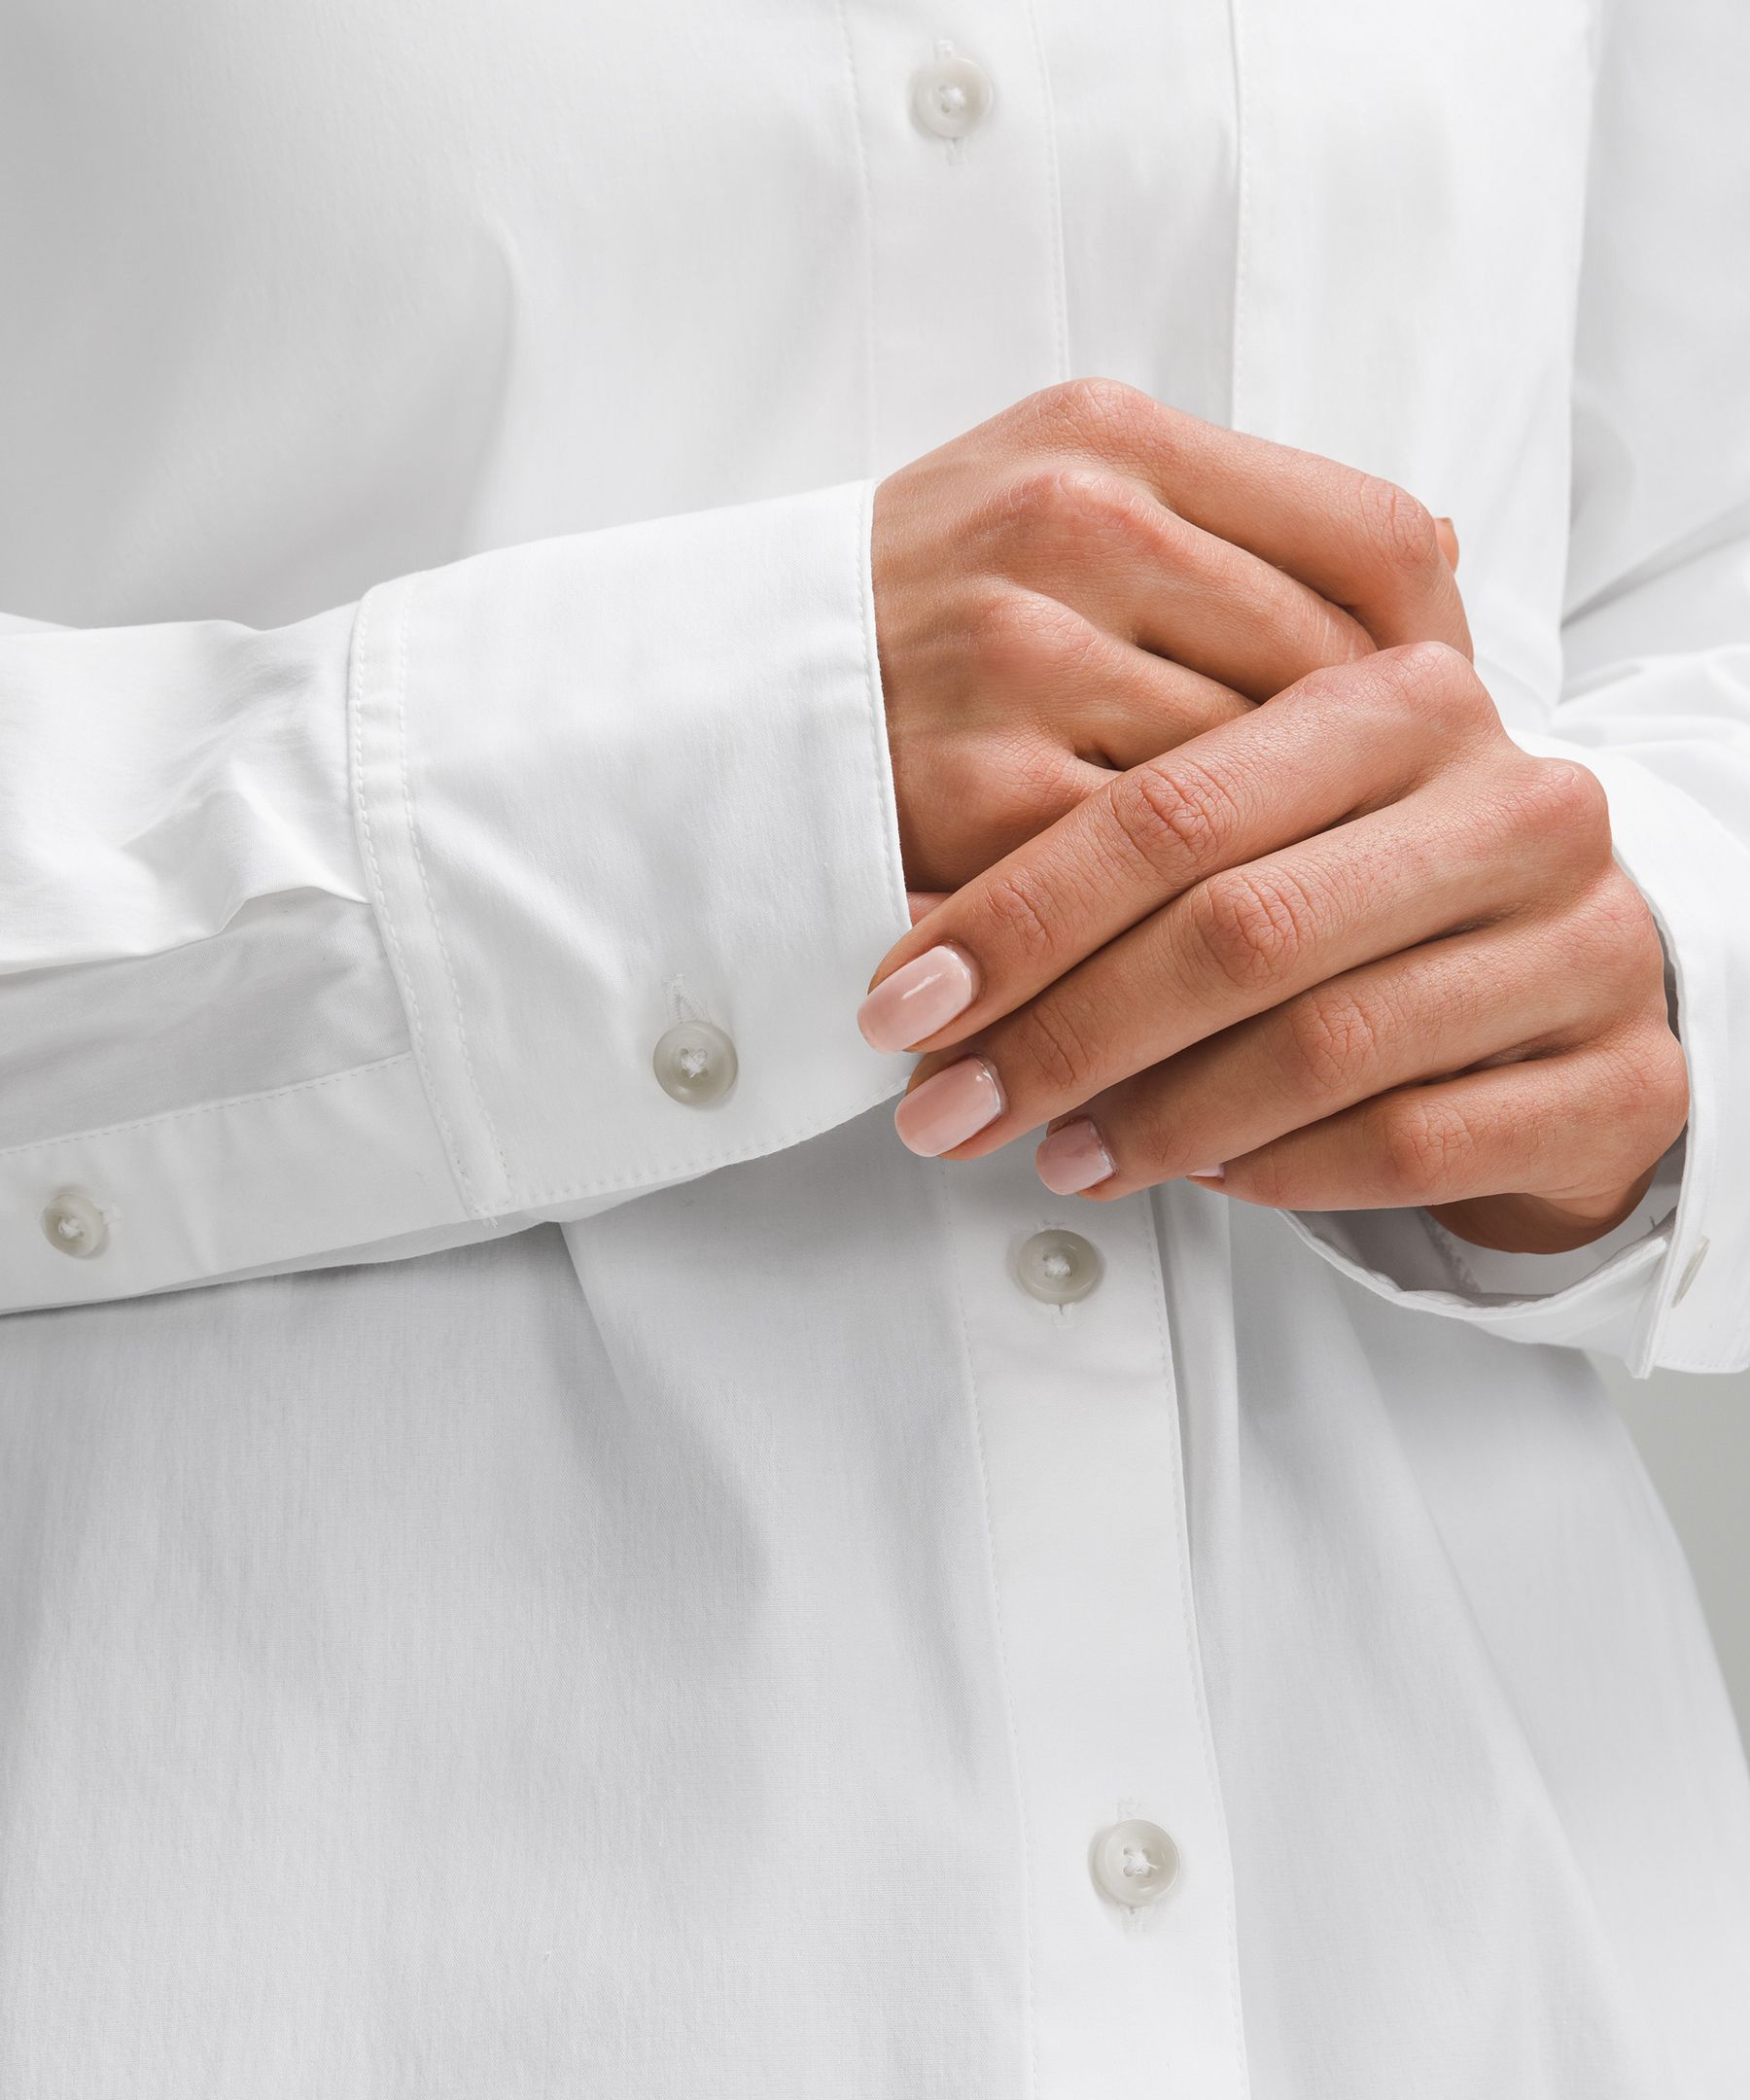 Relaxed-Fit Cotton-Blend Poplin Button-Down Shirt | Women's Long Sleeve Shirts